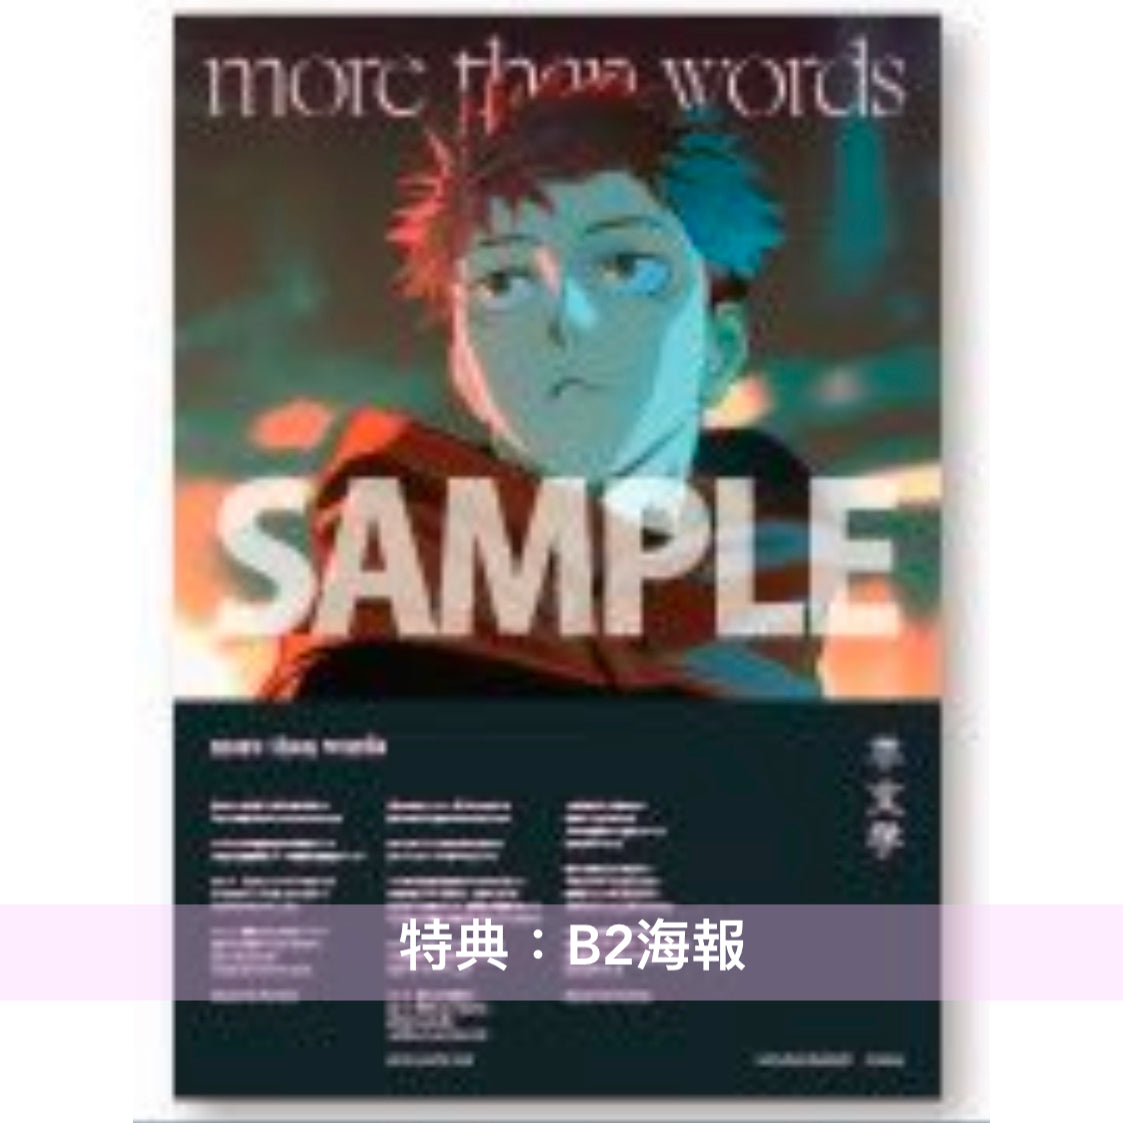 殿堂 羊文学 「more than words」初回仕様盤 新品未開封 - CD